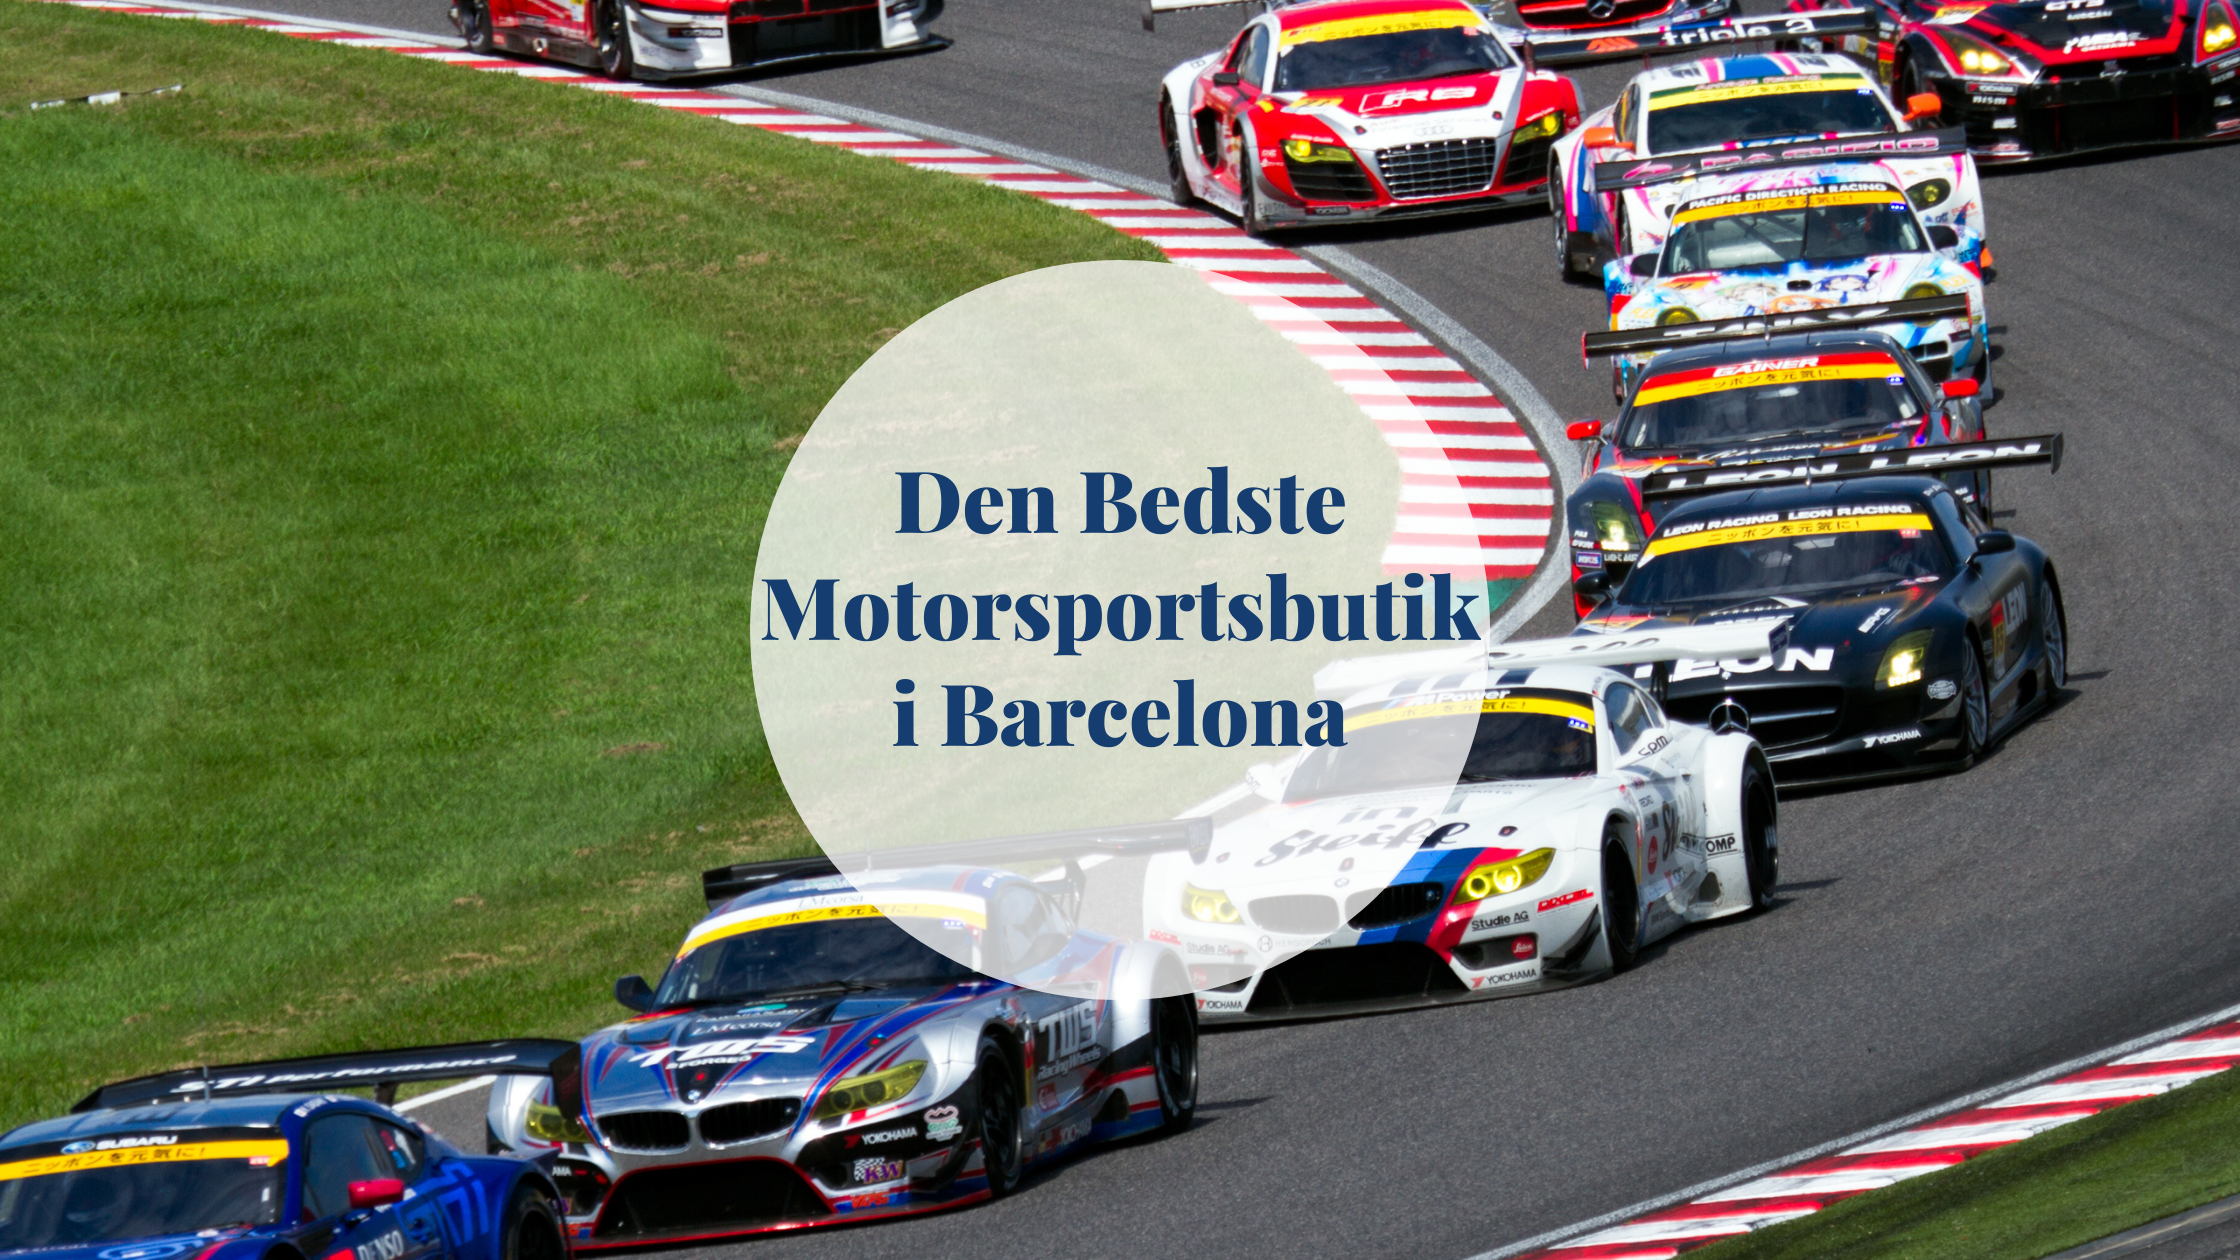 Kælder Beskatning faktum Den bedste motorsportsbutik i Barcelona | Barcelona-Home Blog